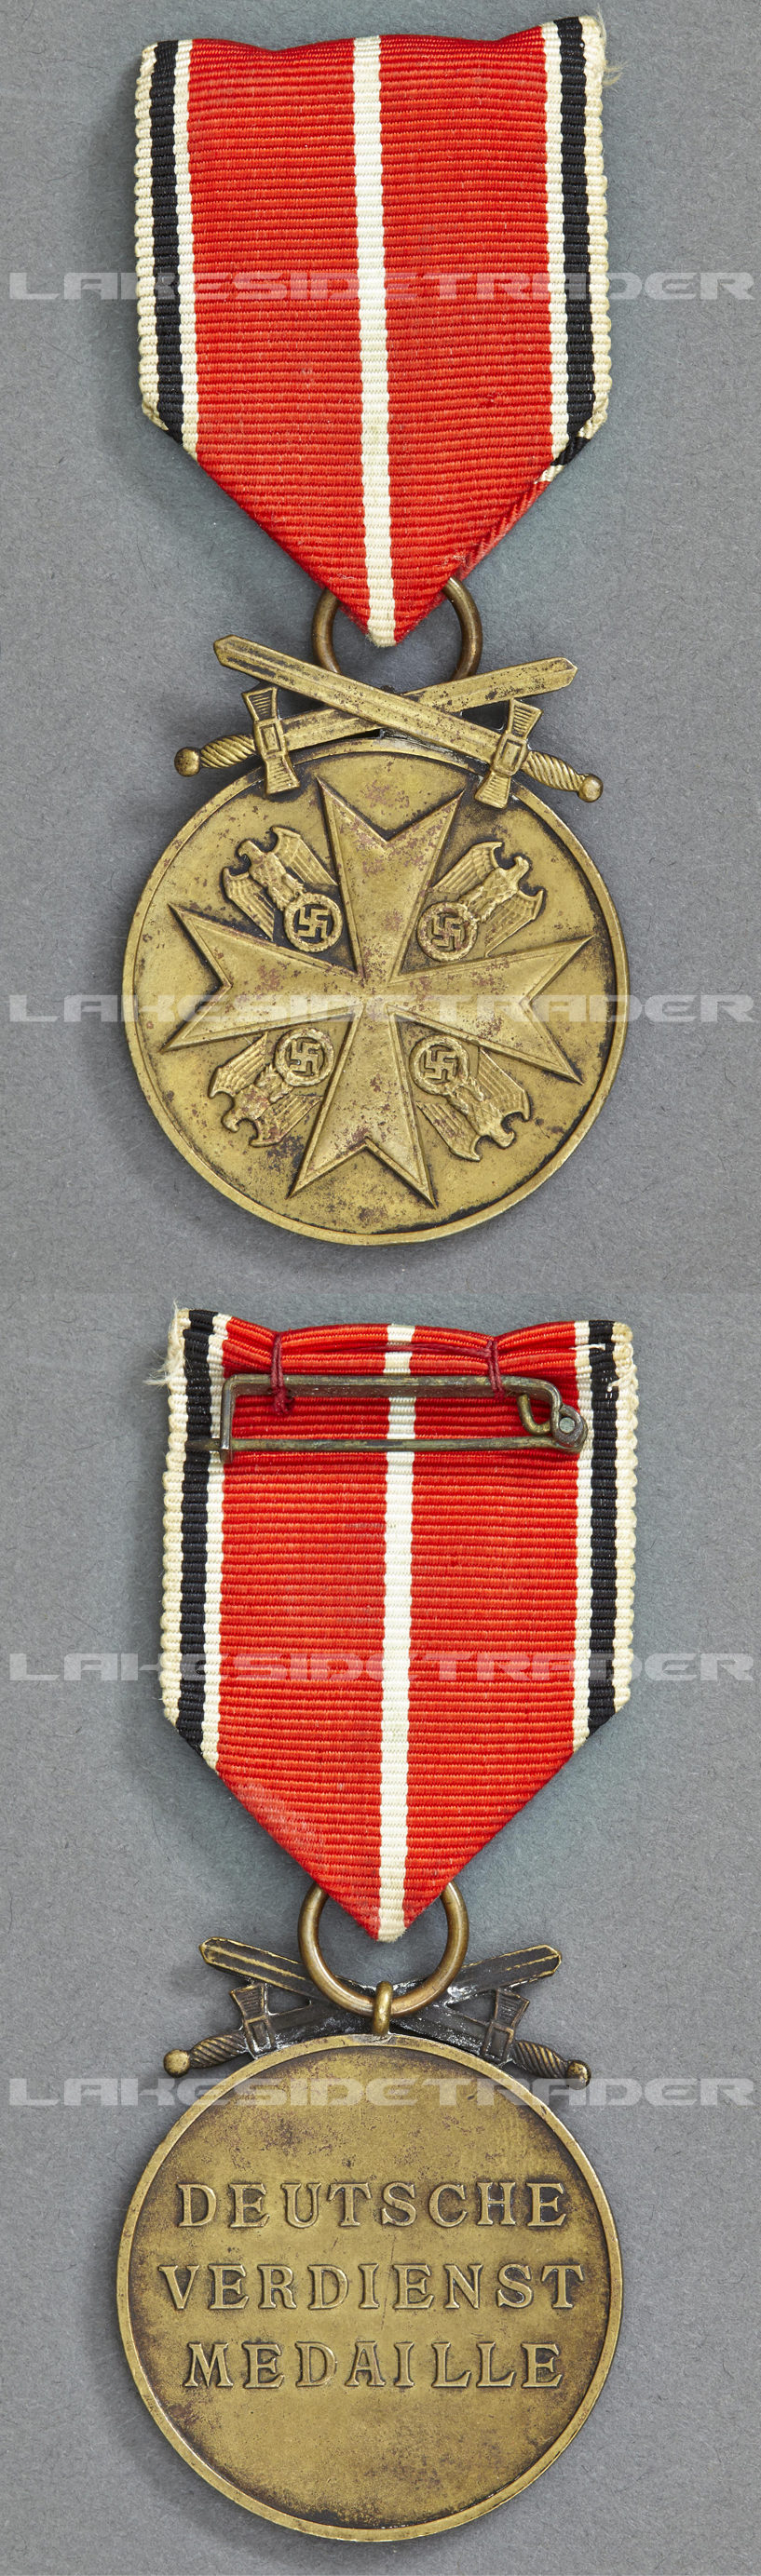 Order of the German Eagle Medal Bronze Merit Medal with Swords 